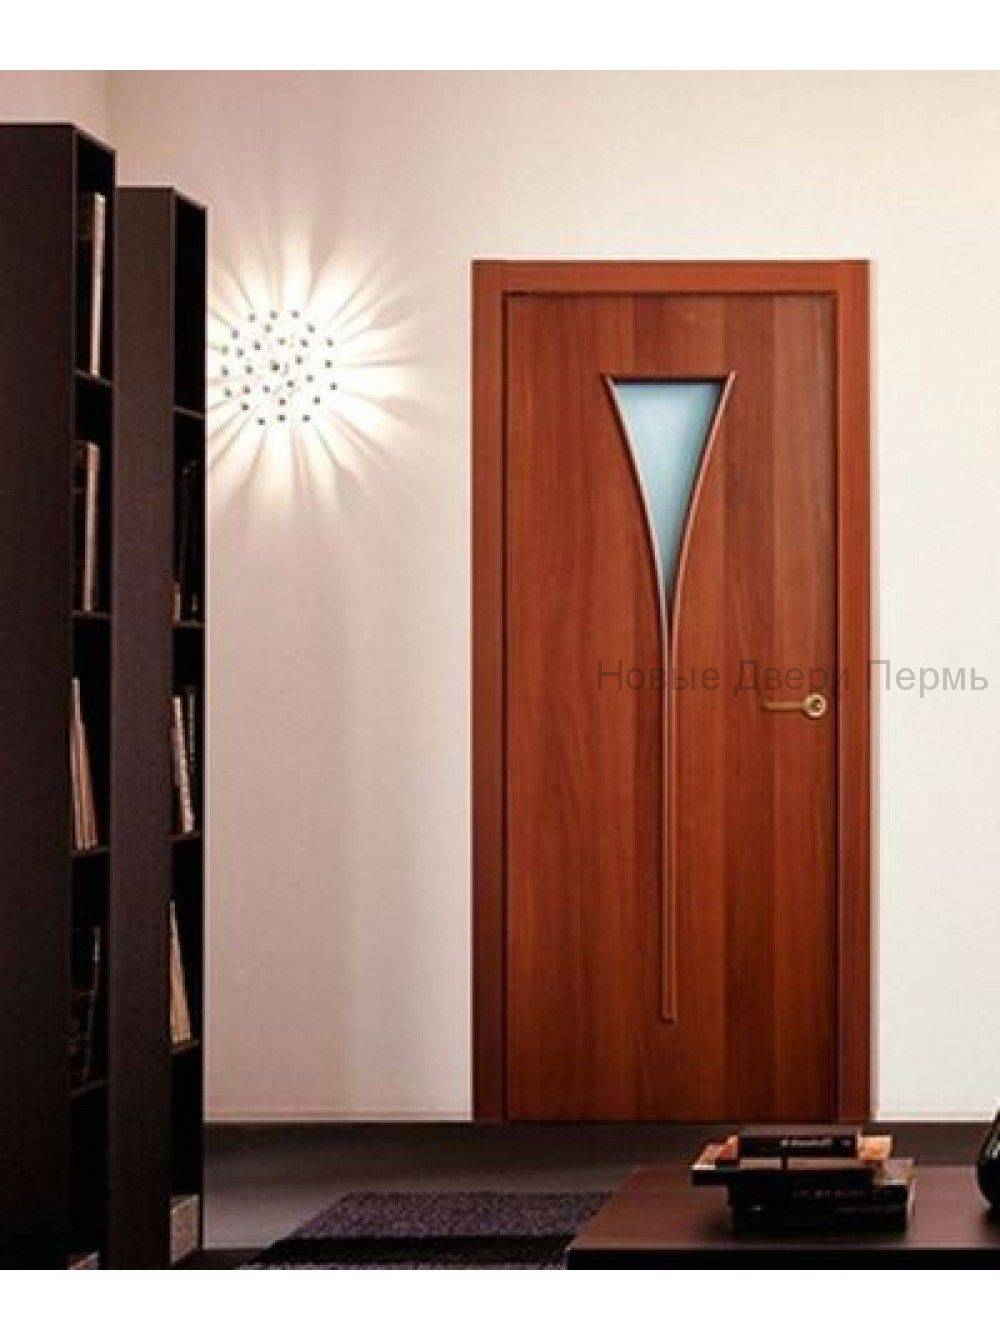 Ламинированные межкомнатные двери эконом класса из мдф, отзывы, фото в интерьере - lineyka